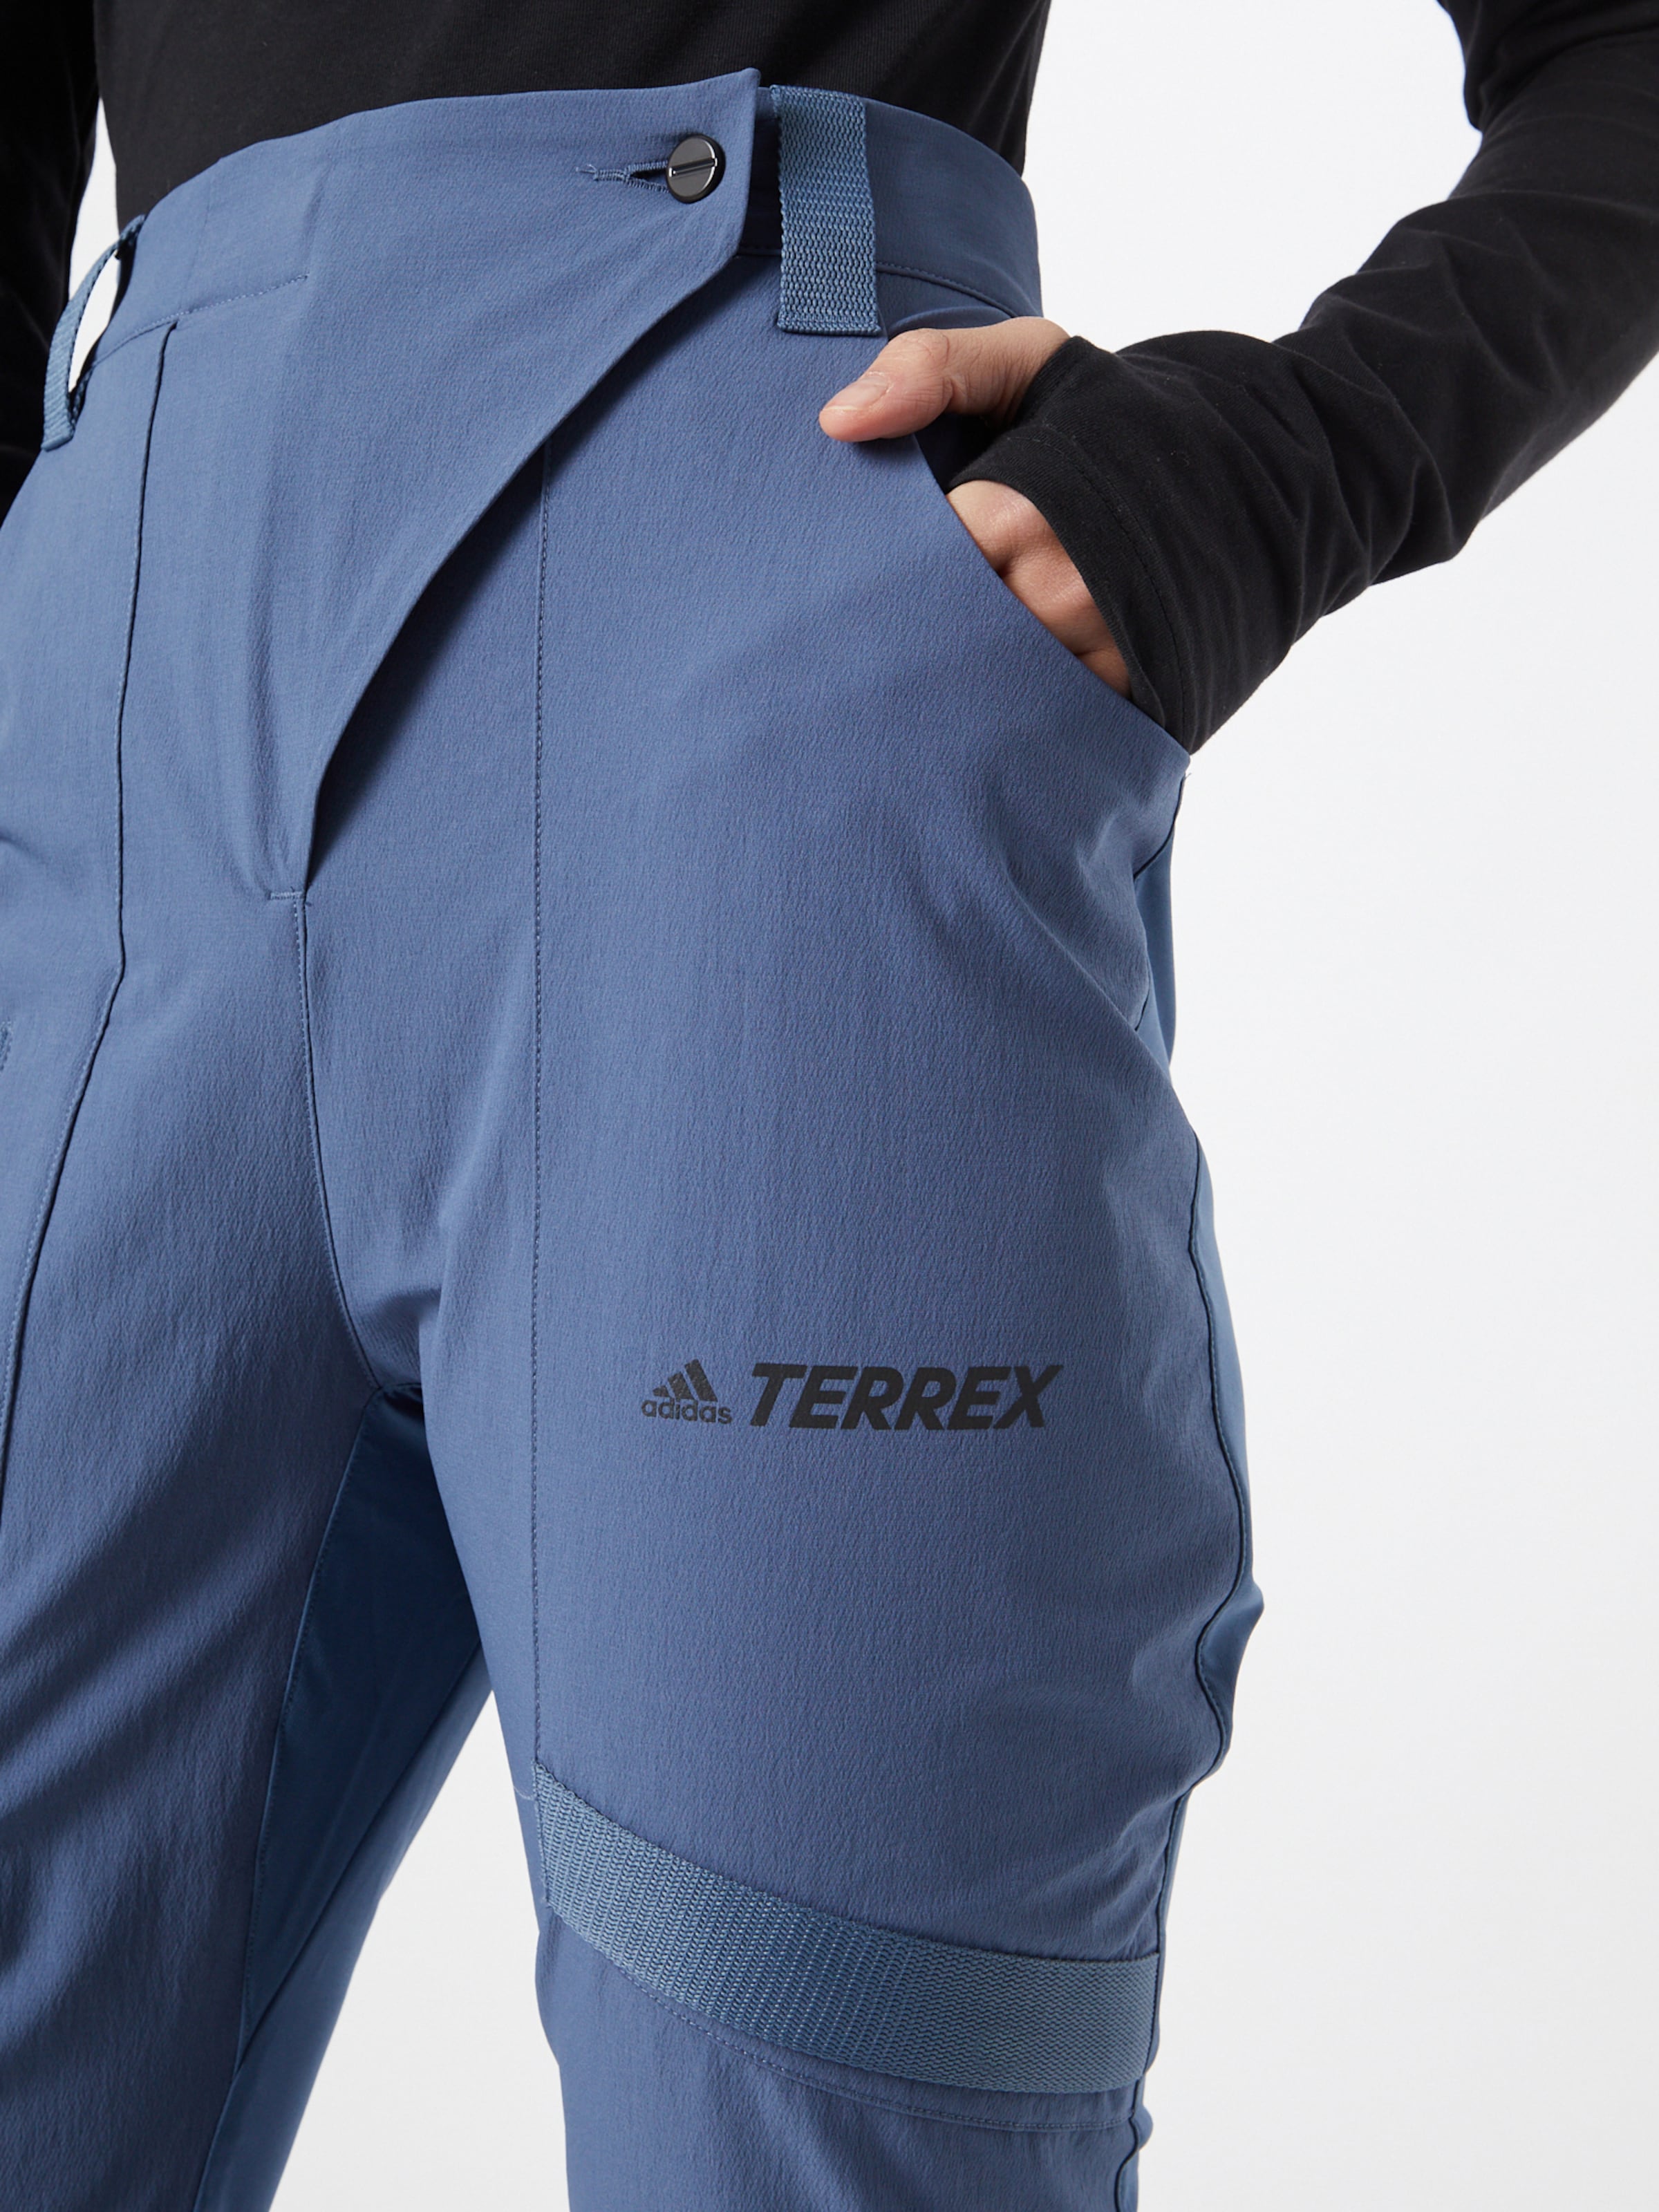 adidas Terrex zip off trousers in black  ASOS